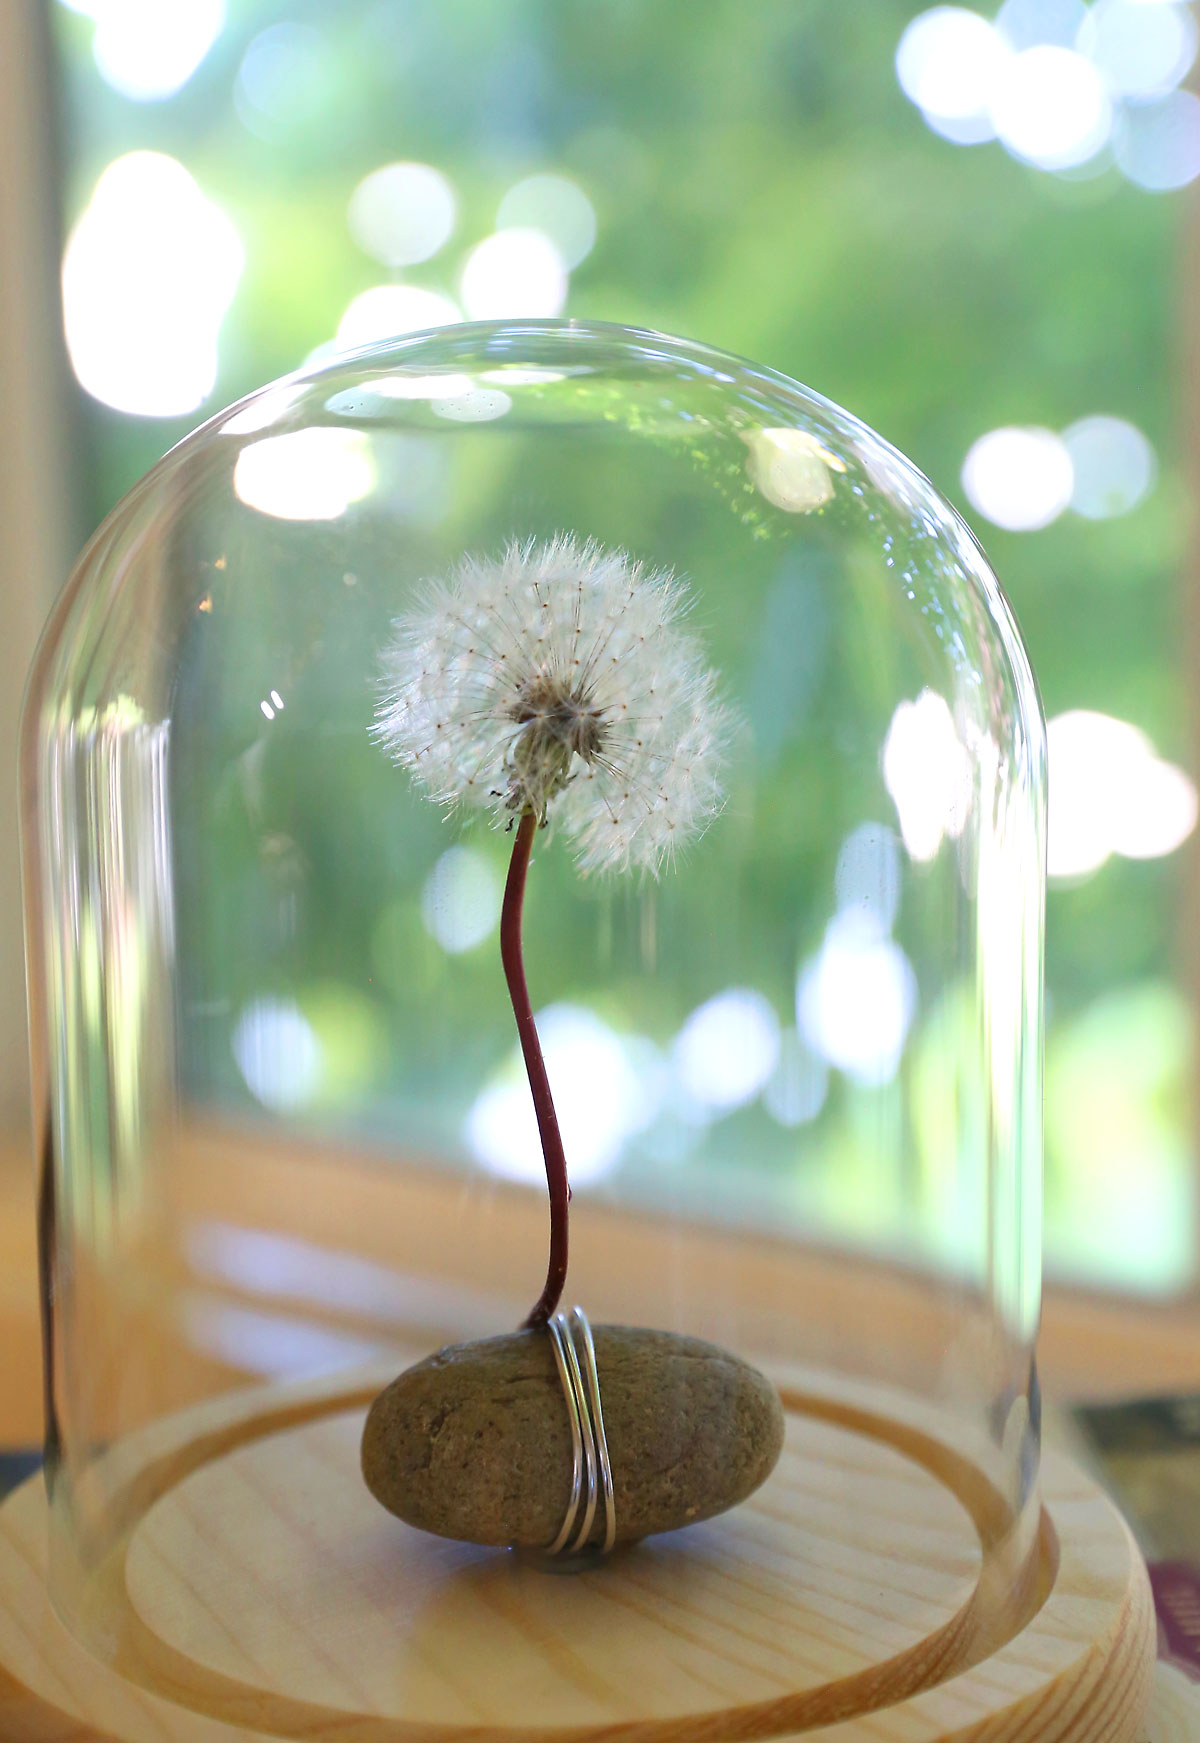 Dandelion puff in a jar.